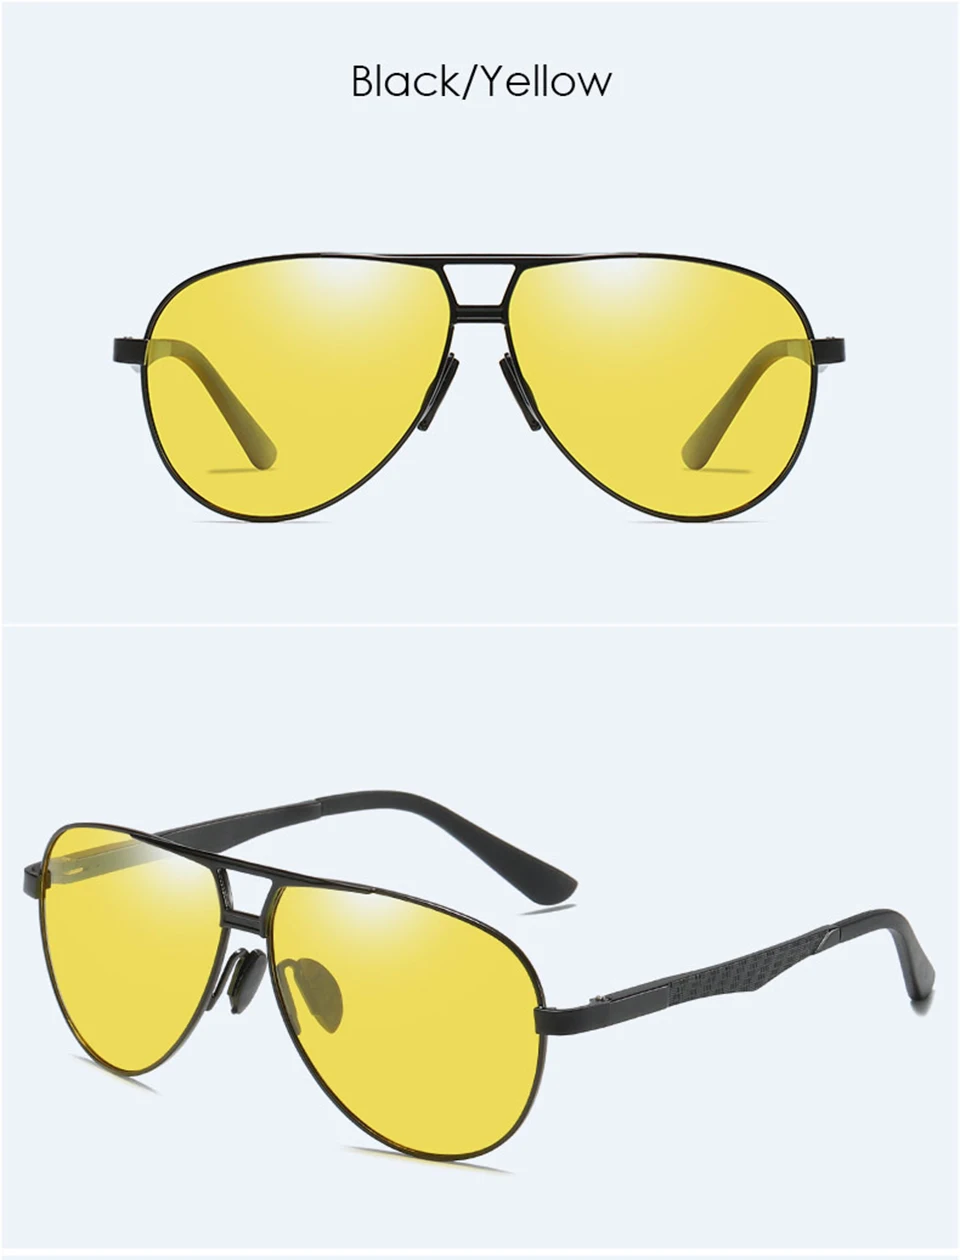 Высокое качество авиационные очки ночного видения мужские поляризованные Роскошные брендовые дизайнерские солнцезащитные очки с двойным мостом для вождения 5 цветов